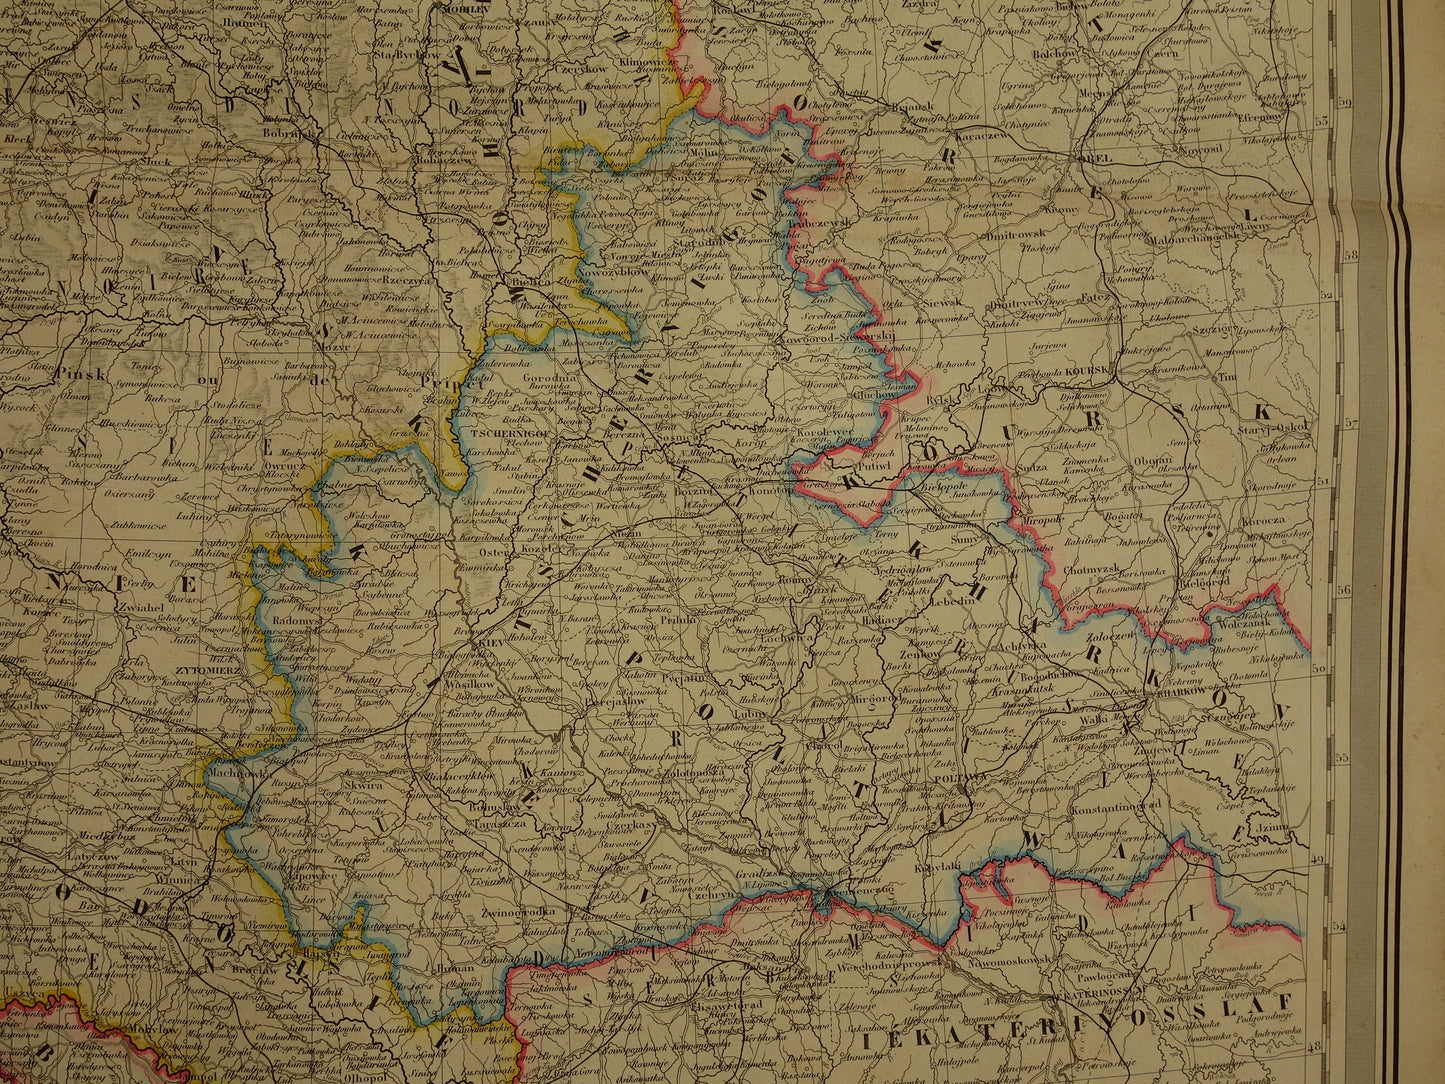 Baltische Staten oude kaart van Europees Rusland 1885 originele antieke landkaart poster Russische Rijk zeer groot formaat